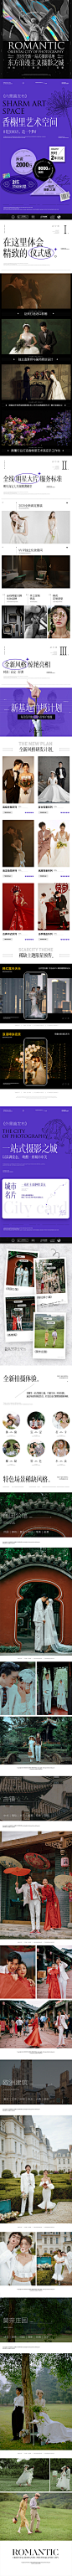 #成都金夫人婚纱摄影网页专题设计#基地包装   @長鯉